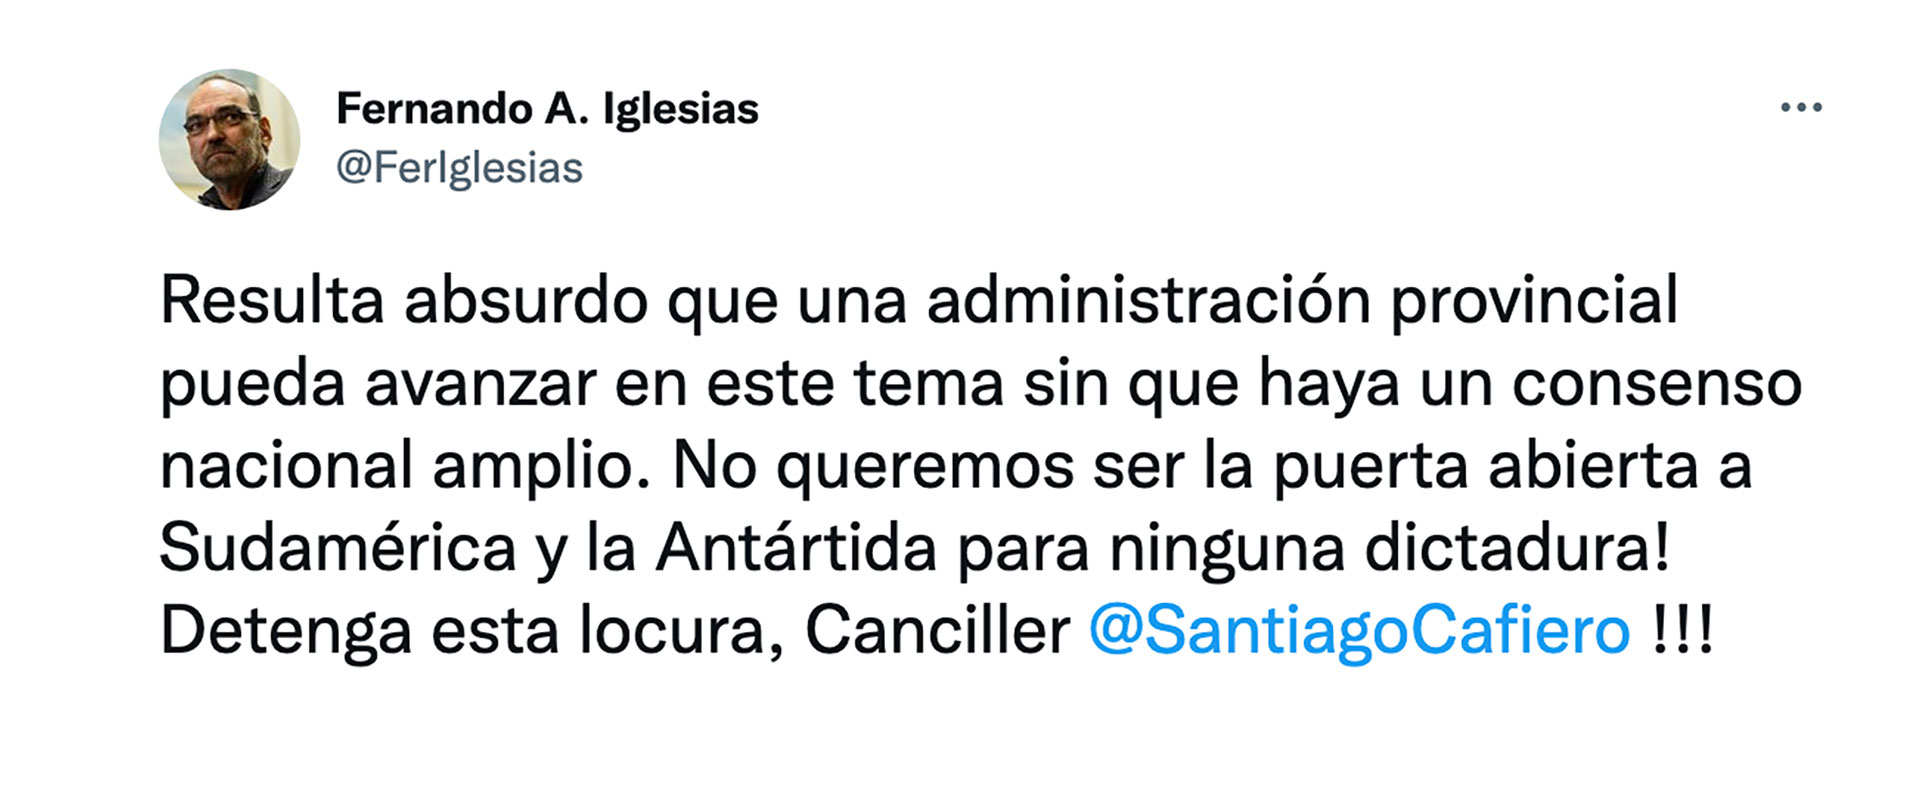 El pedido de Fernando Iglesias a Santiago Cafiero 